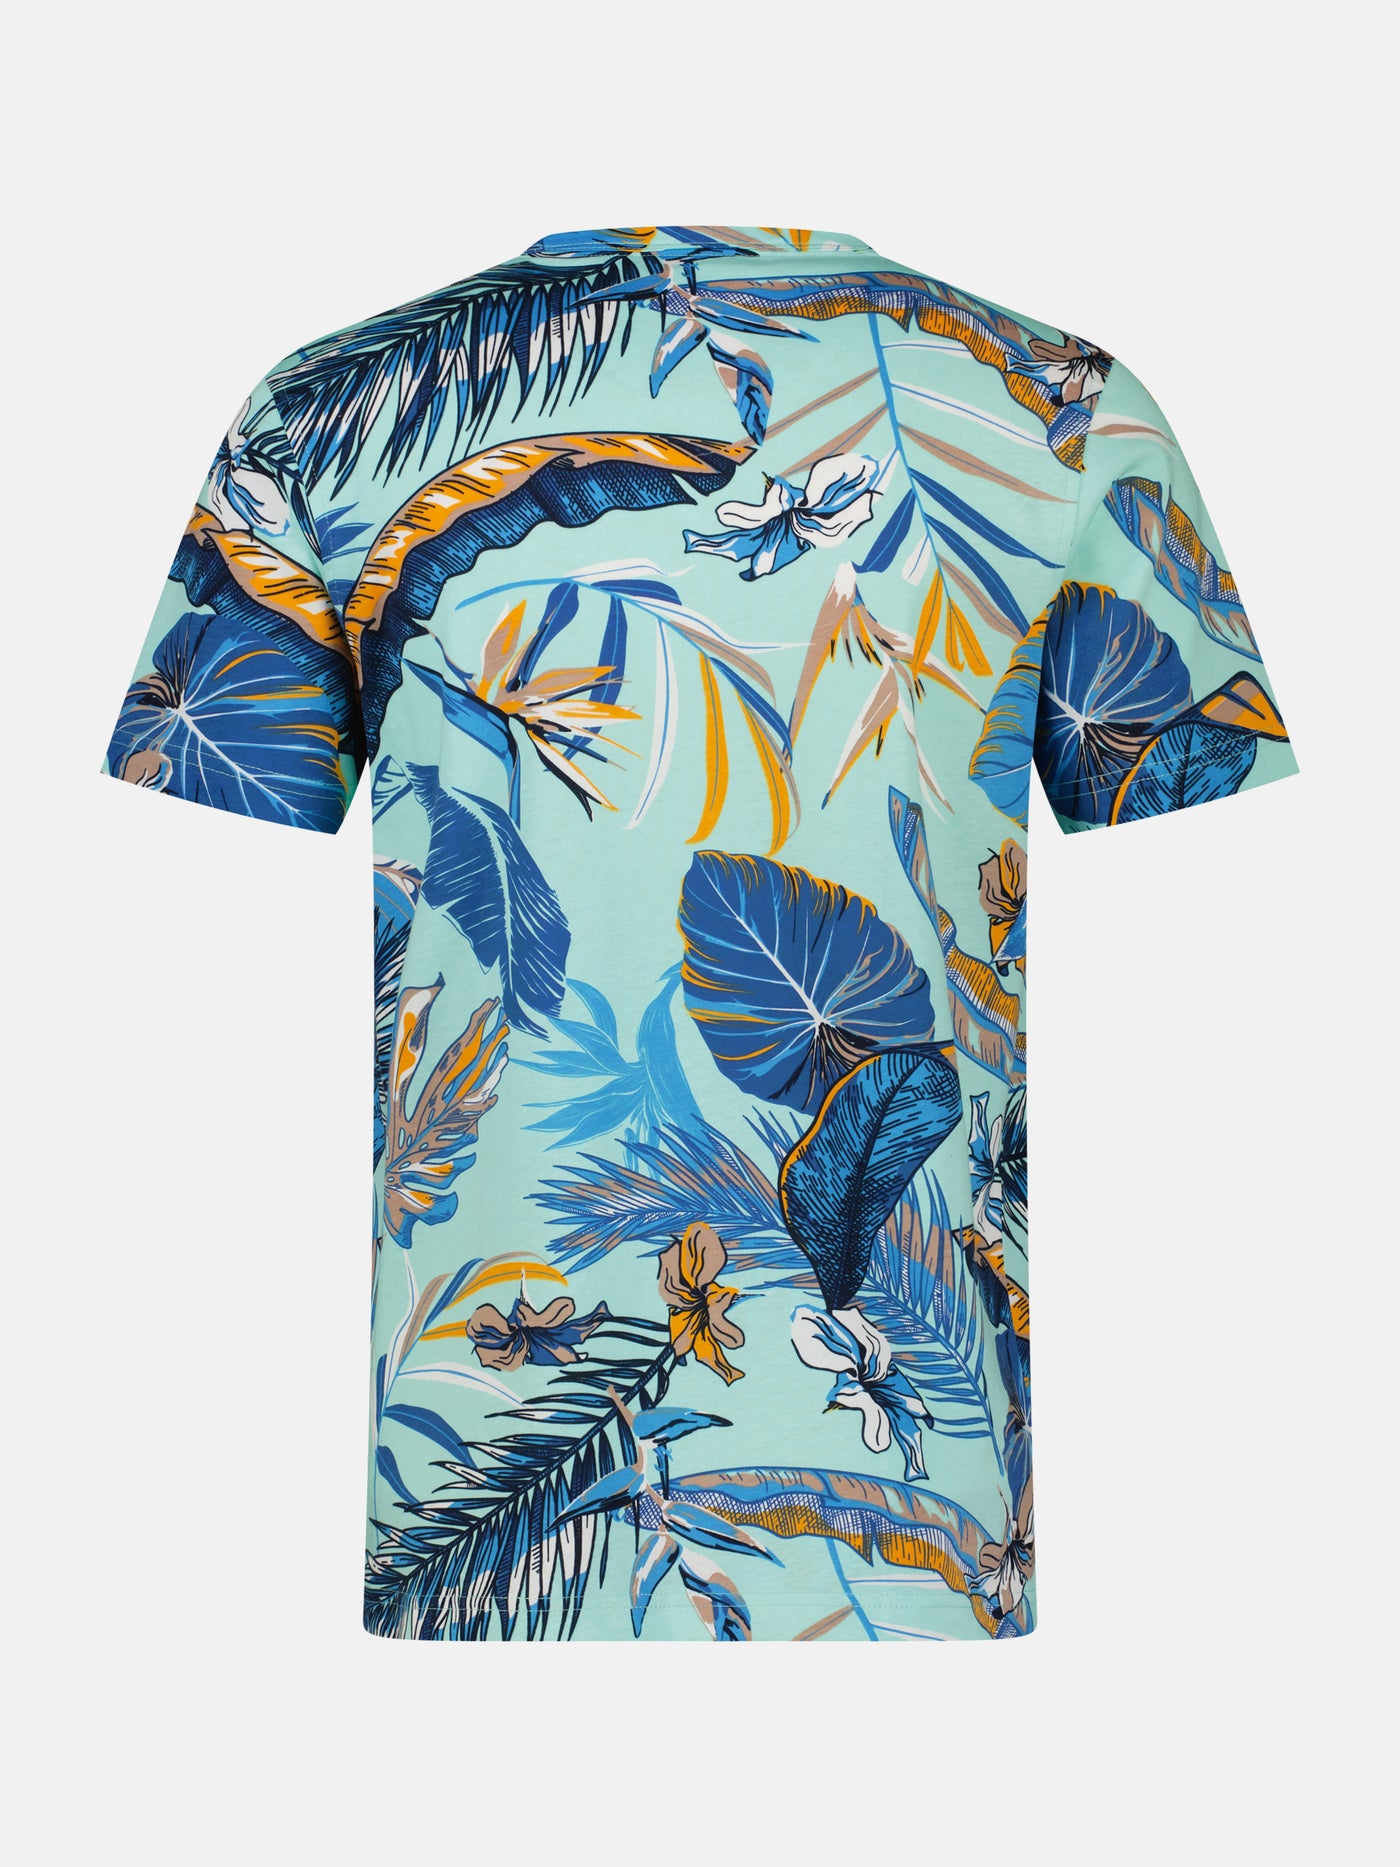 T-shirt in Hawaïaanse stijl